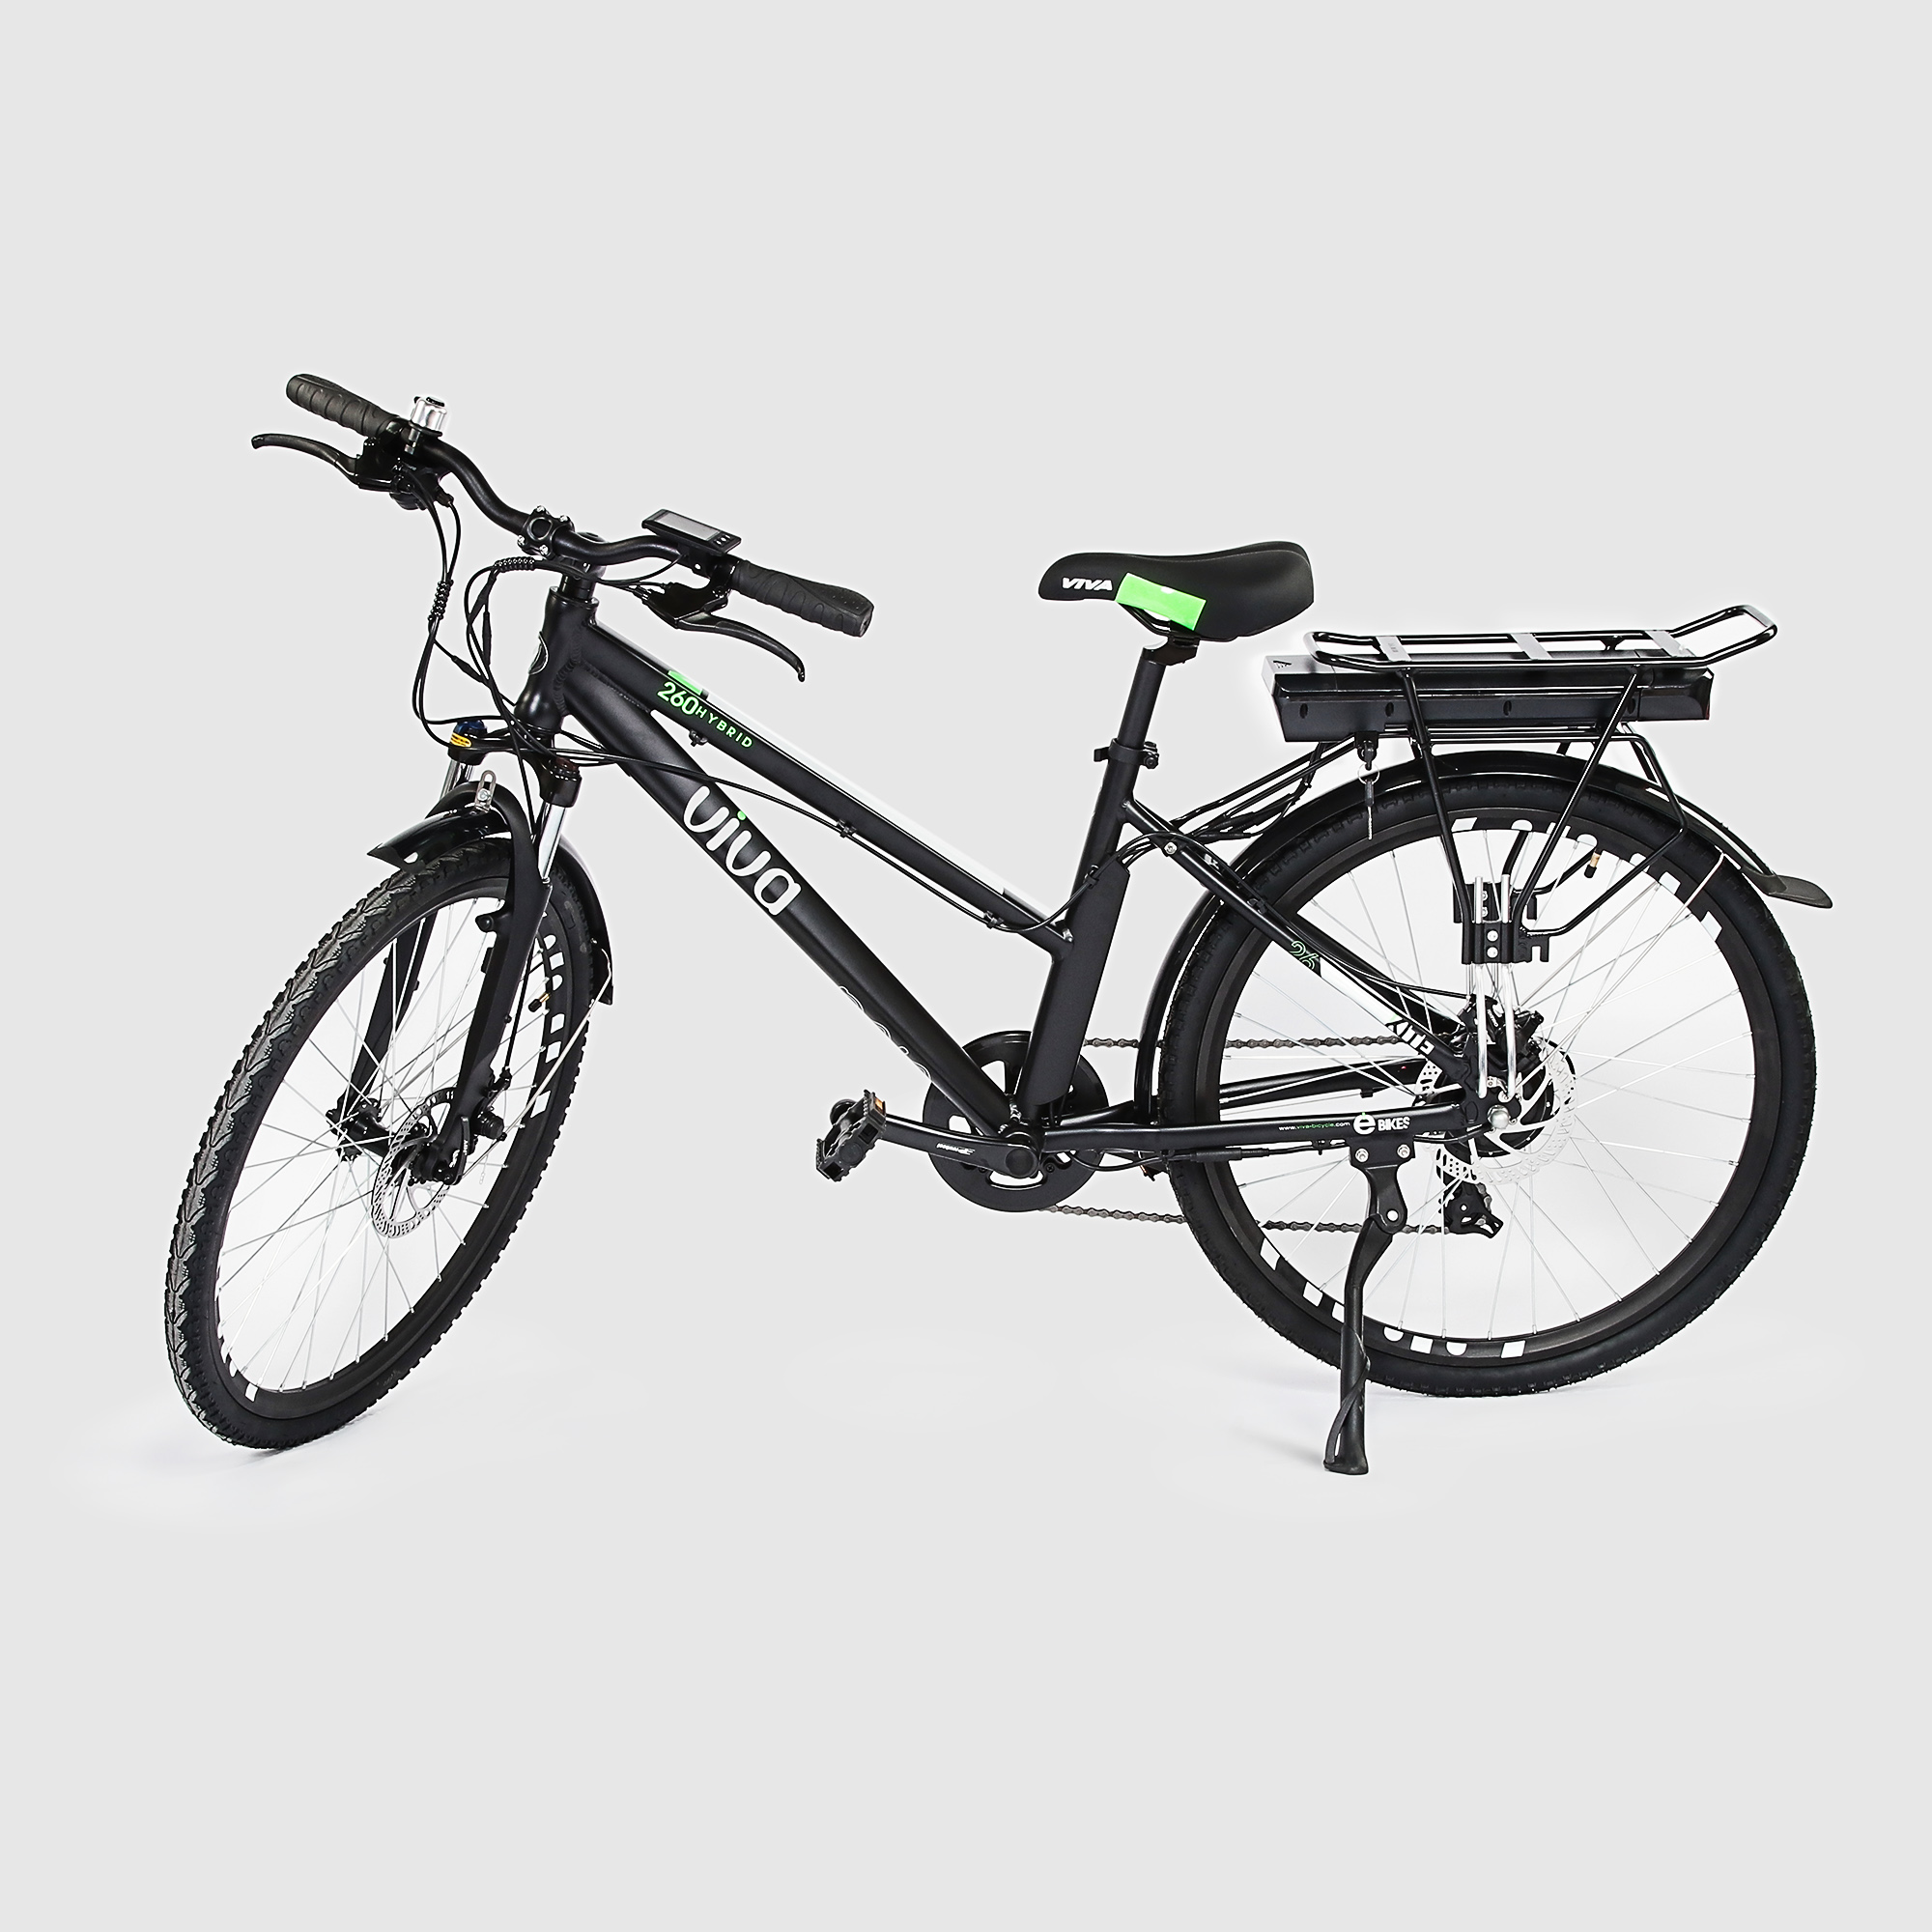 Велосипед электрический VIVA Kite hybrid, диаметр колес 26 дюймов, 7 скоростей, 25 км/ч, механические дисковые тормоза Tektro MD-M280, 190х60х110 см, черный